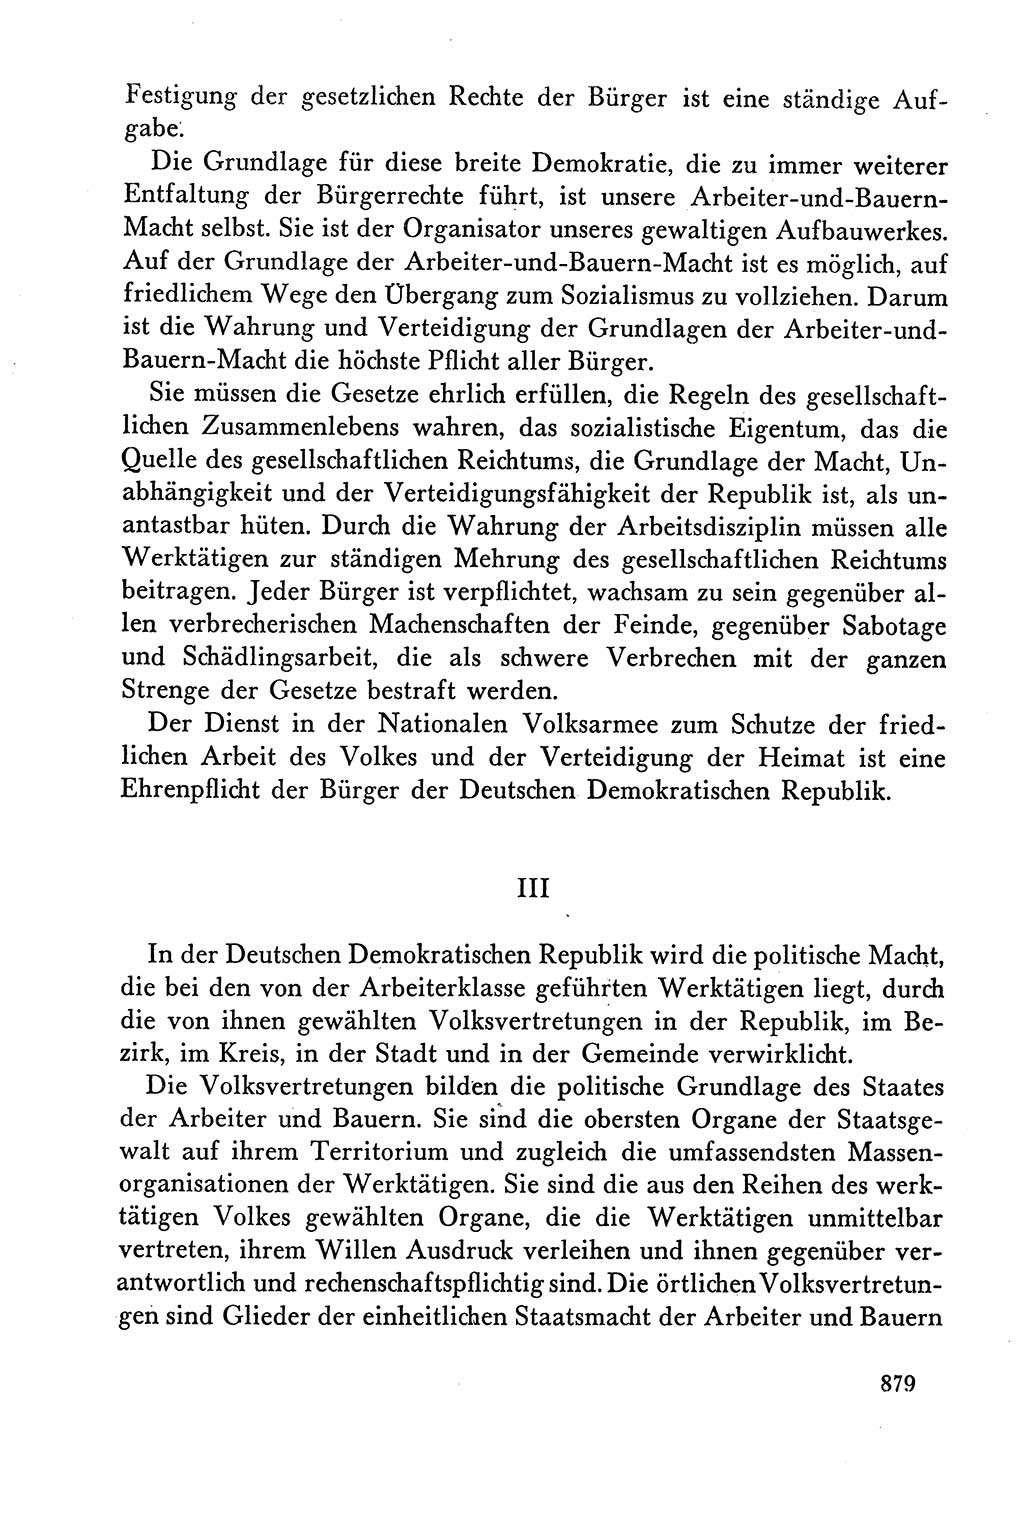 Dokumente der Sozialistischen Einheitspartei Deutschlands (SED) [Deutsche Demokratische Republik (DDR)] 1958-1959, Seite 879 (Dok. SED DDR 1958-1959, S. 879)